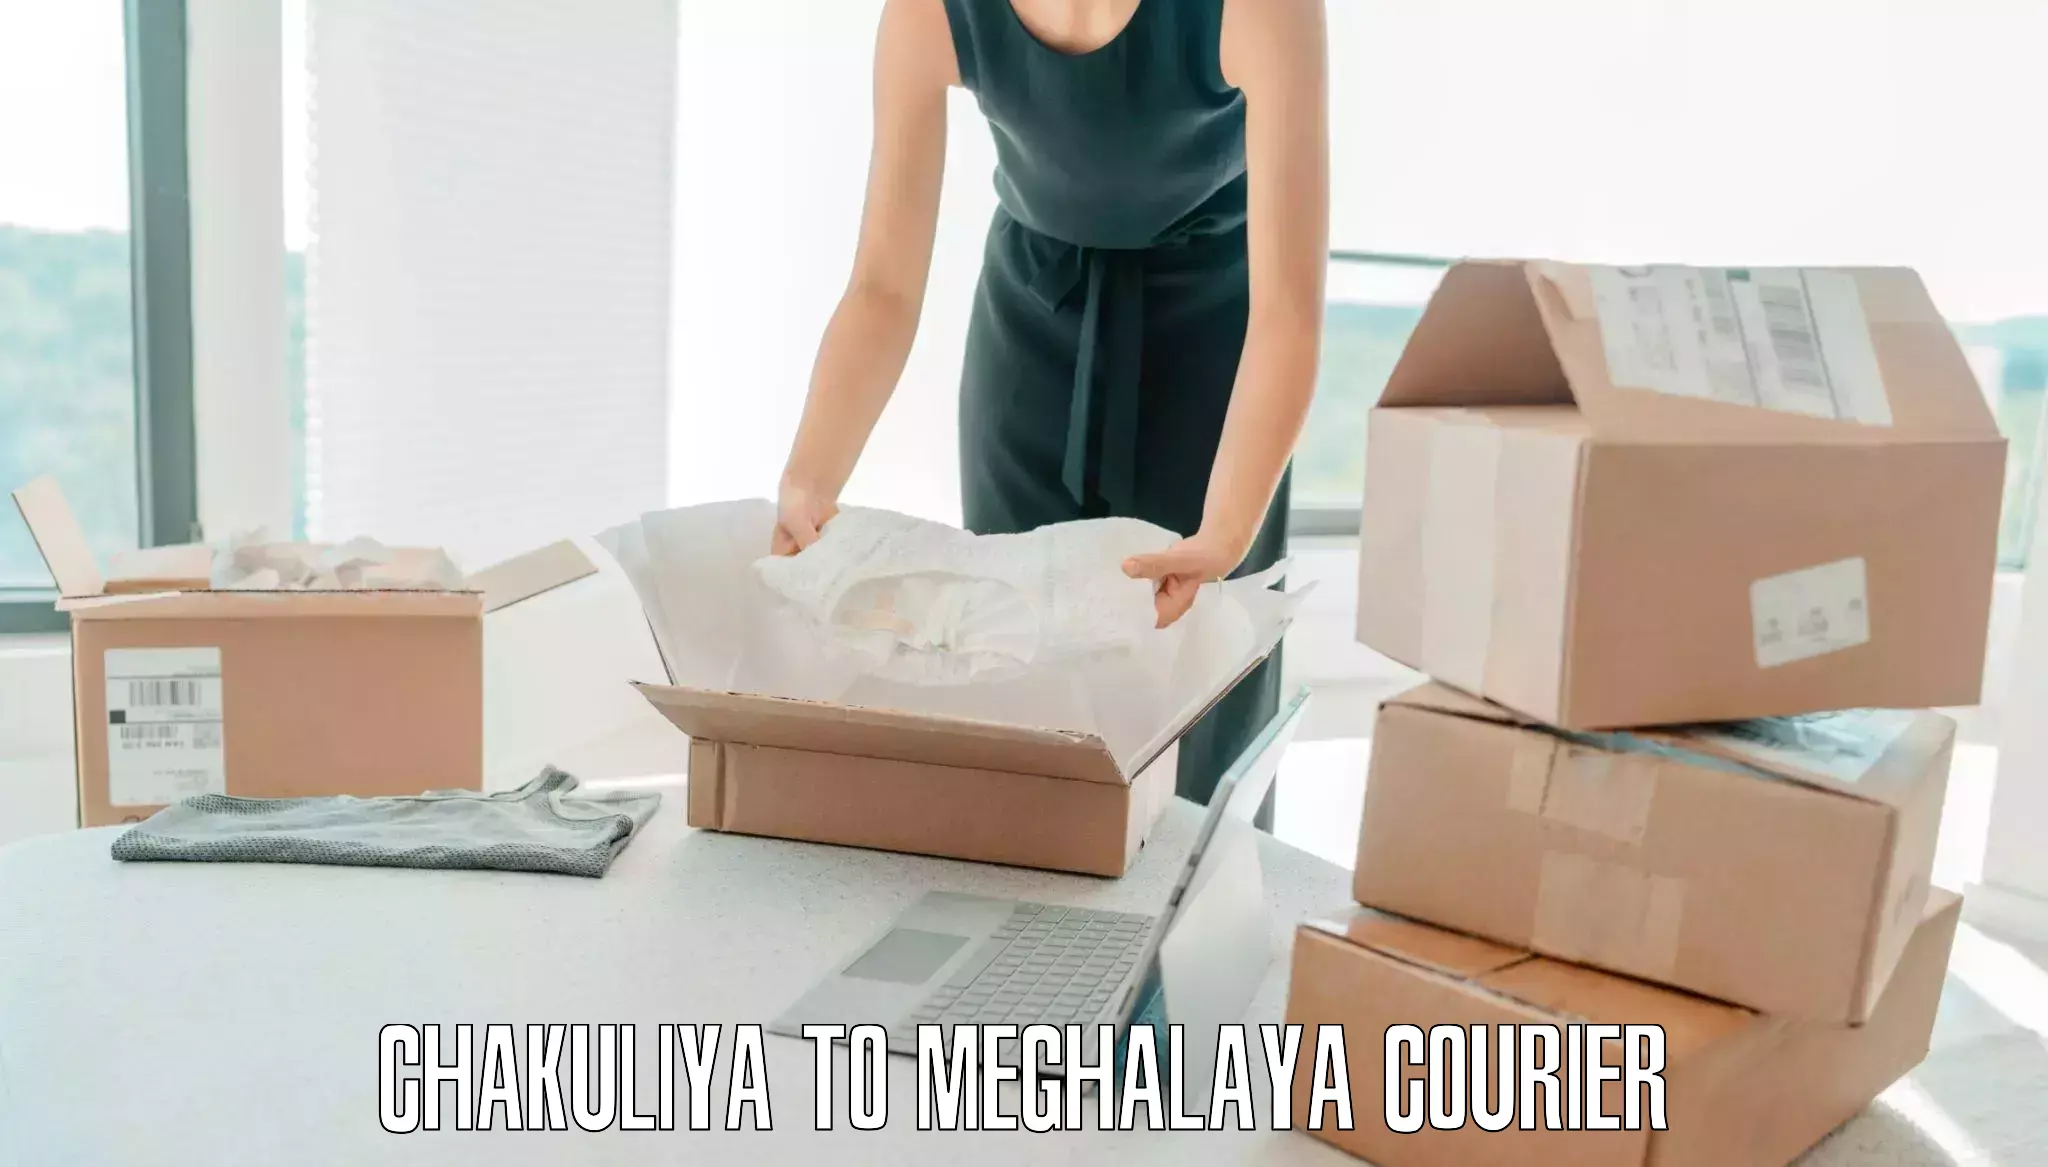 Luggage transport logistics Chakuliya to Meghalaya